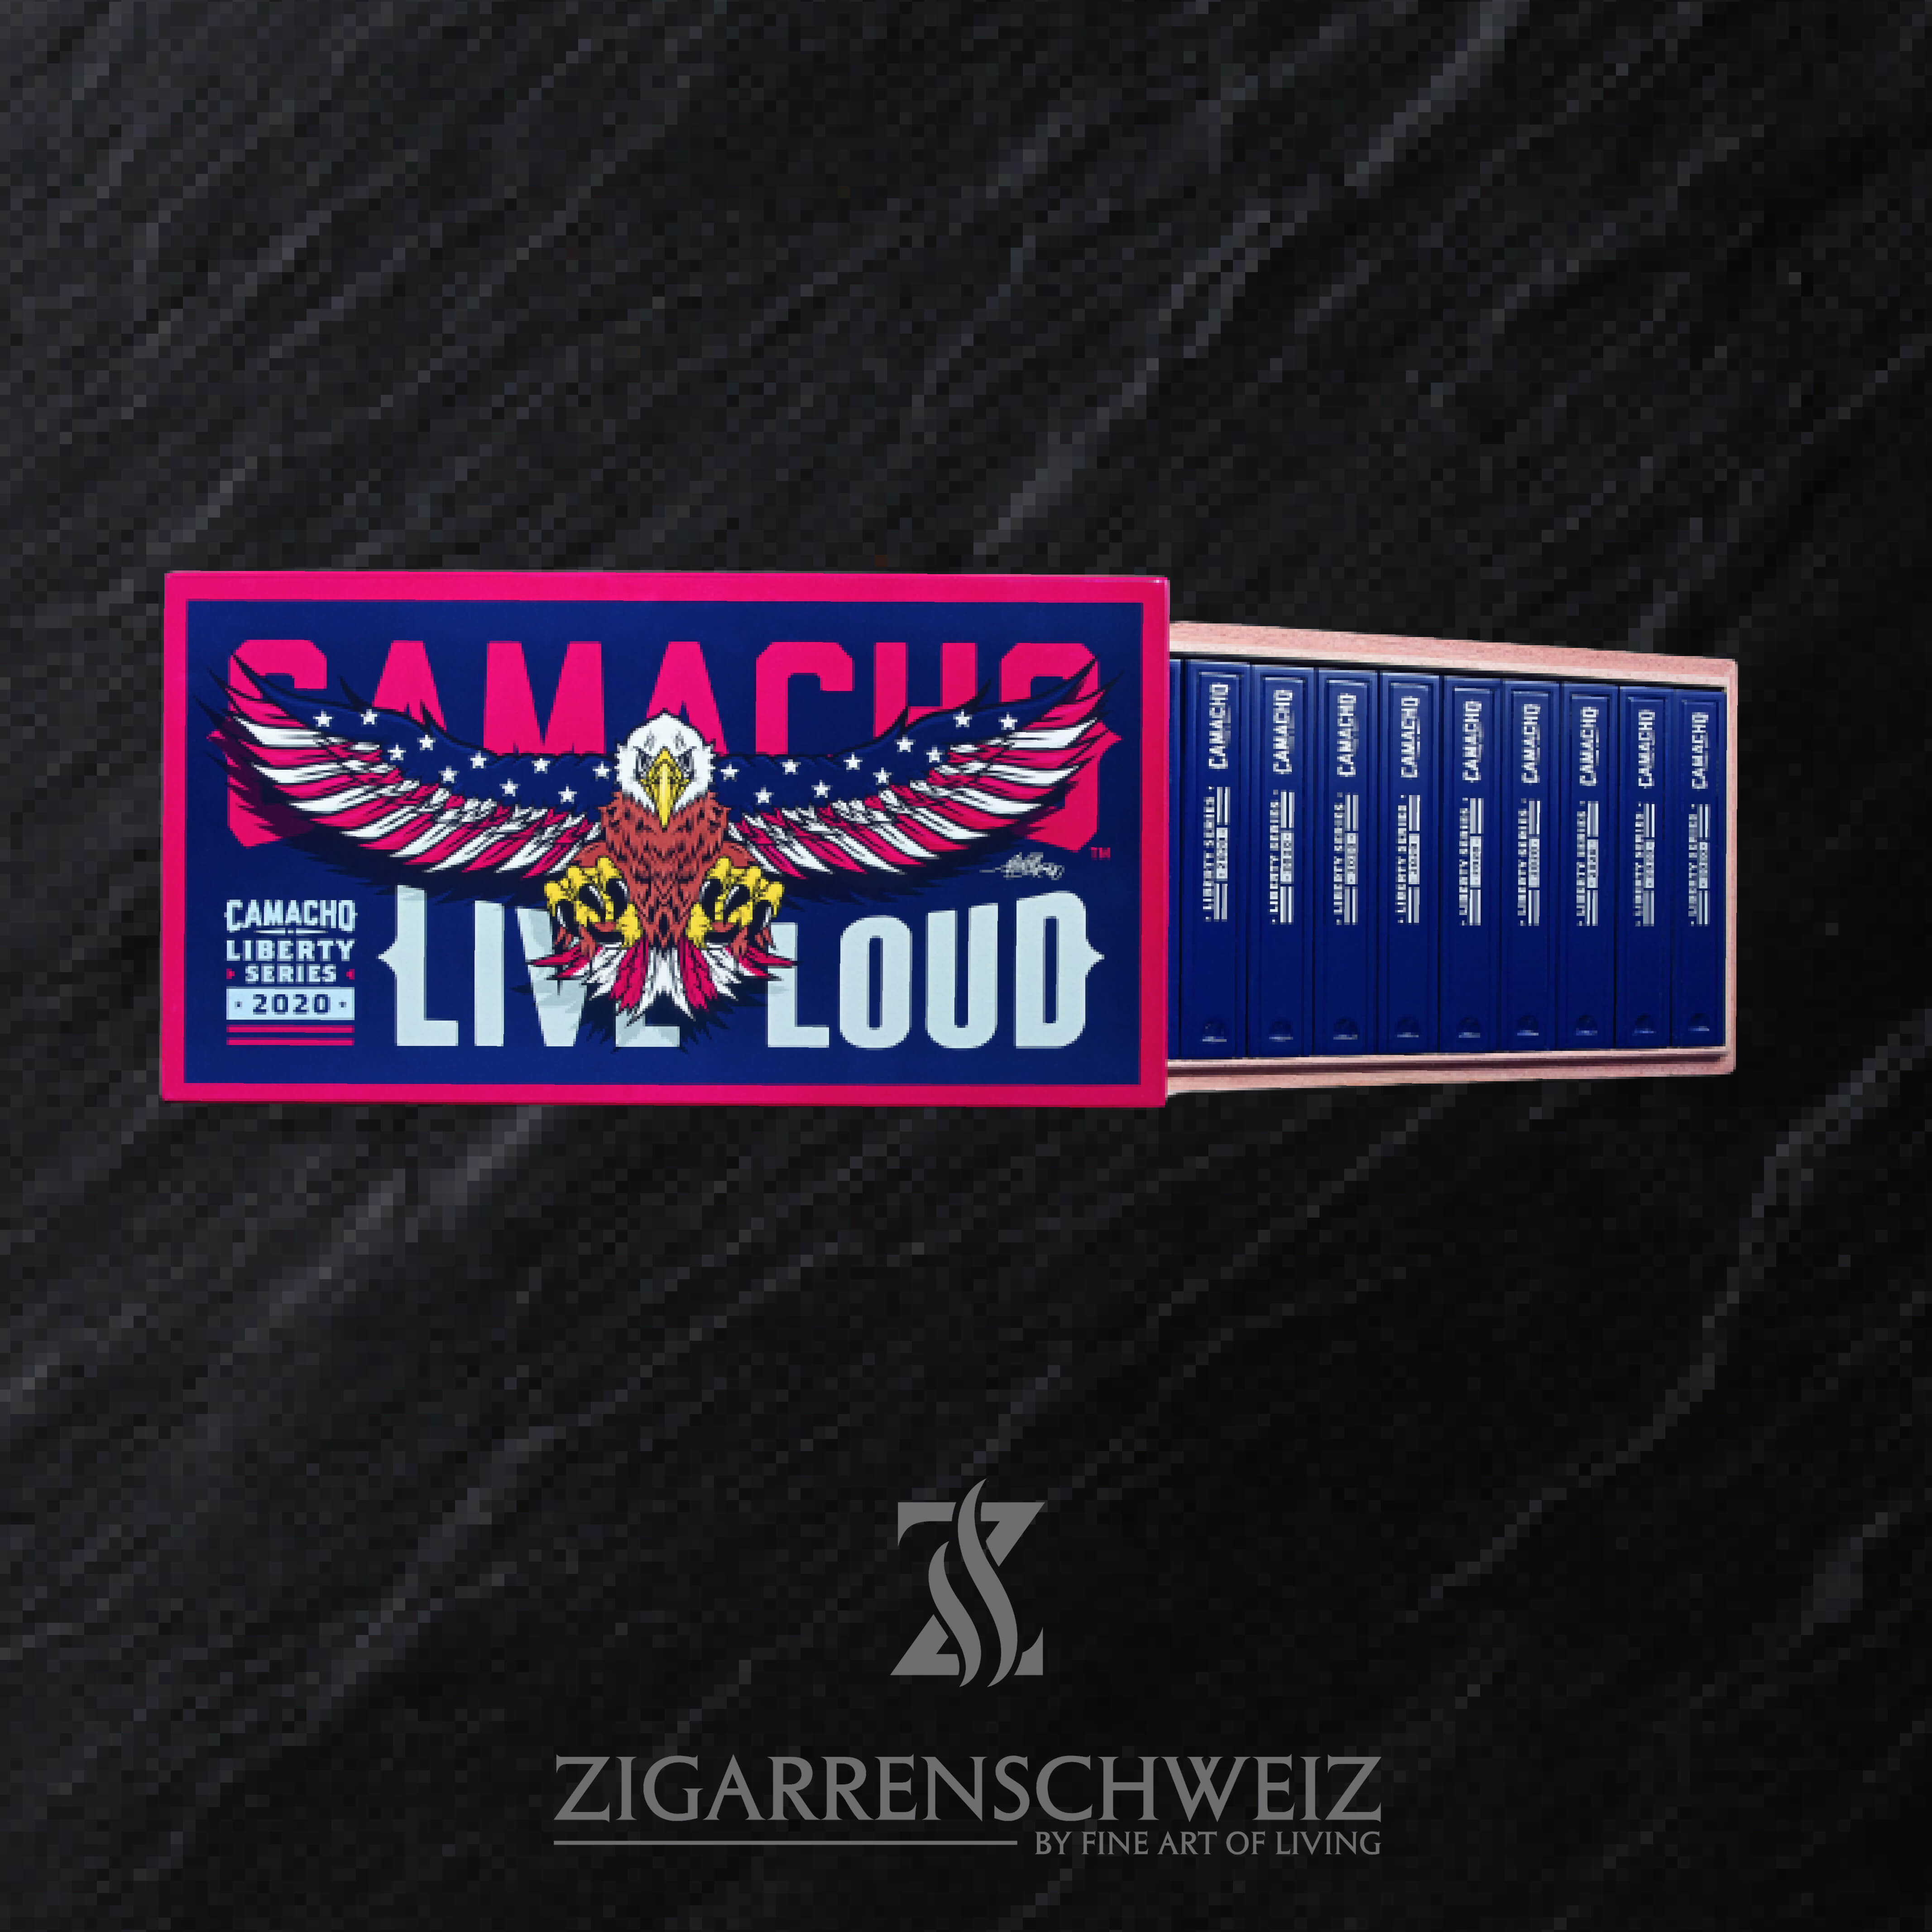 Camacho Liberty 2020 Gordo Zigarren Kiste